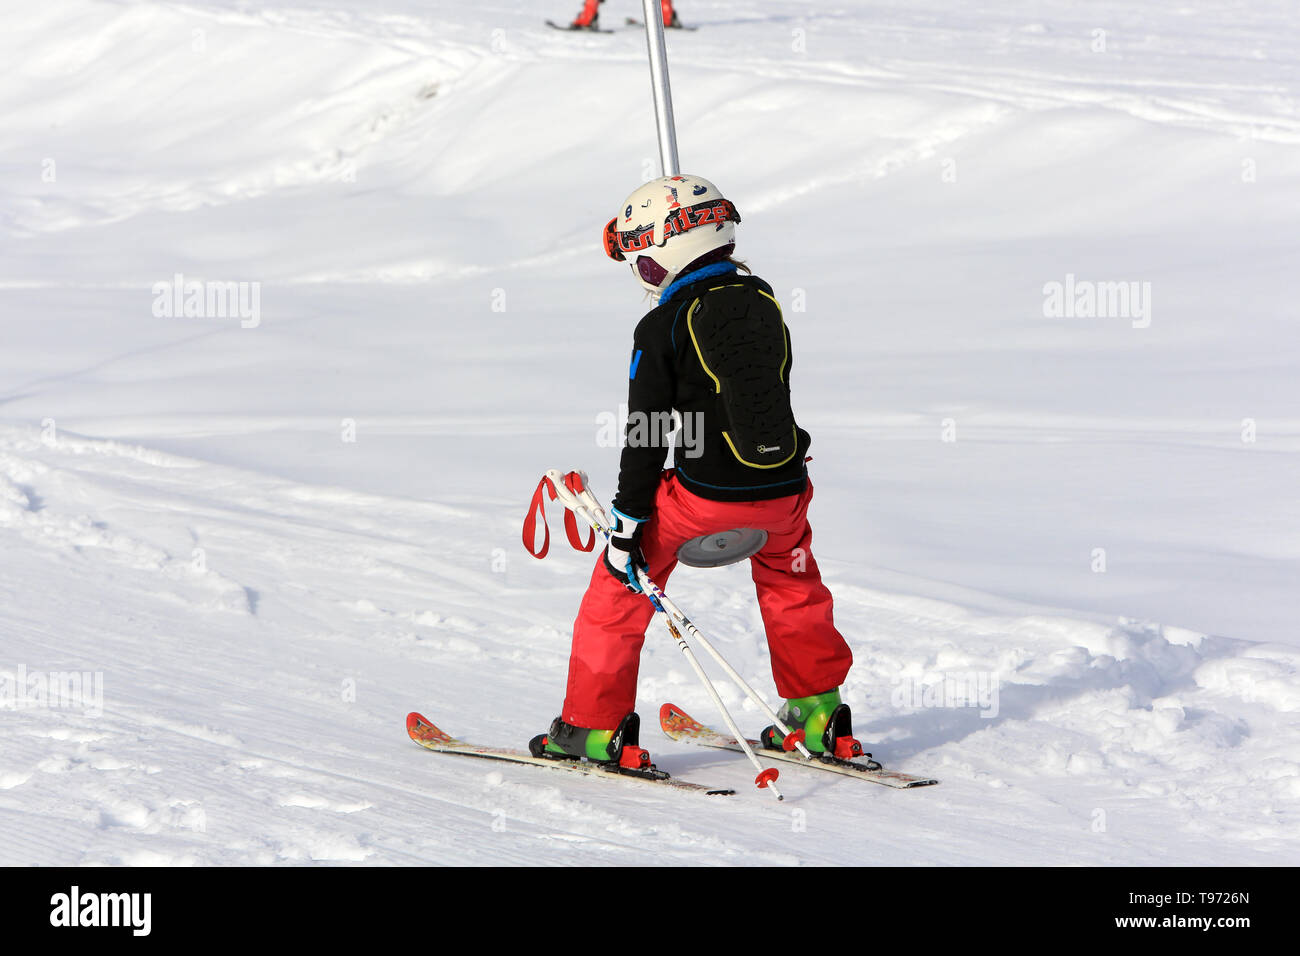 Jeune enfant sur un tire-fesse. Plaine-Joux. Haute-Savoie. France. Stock Photo